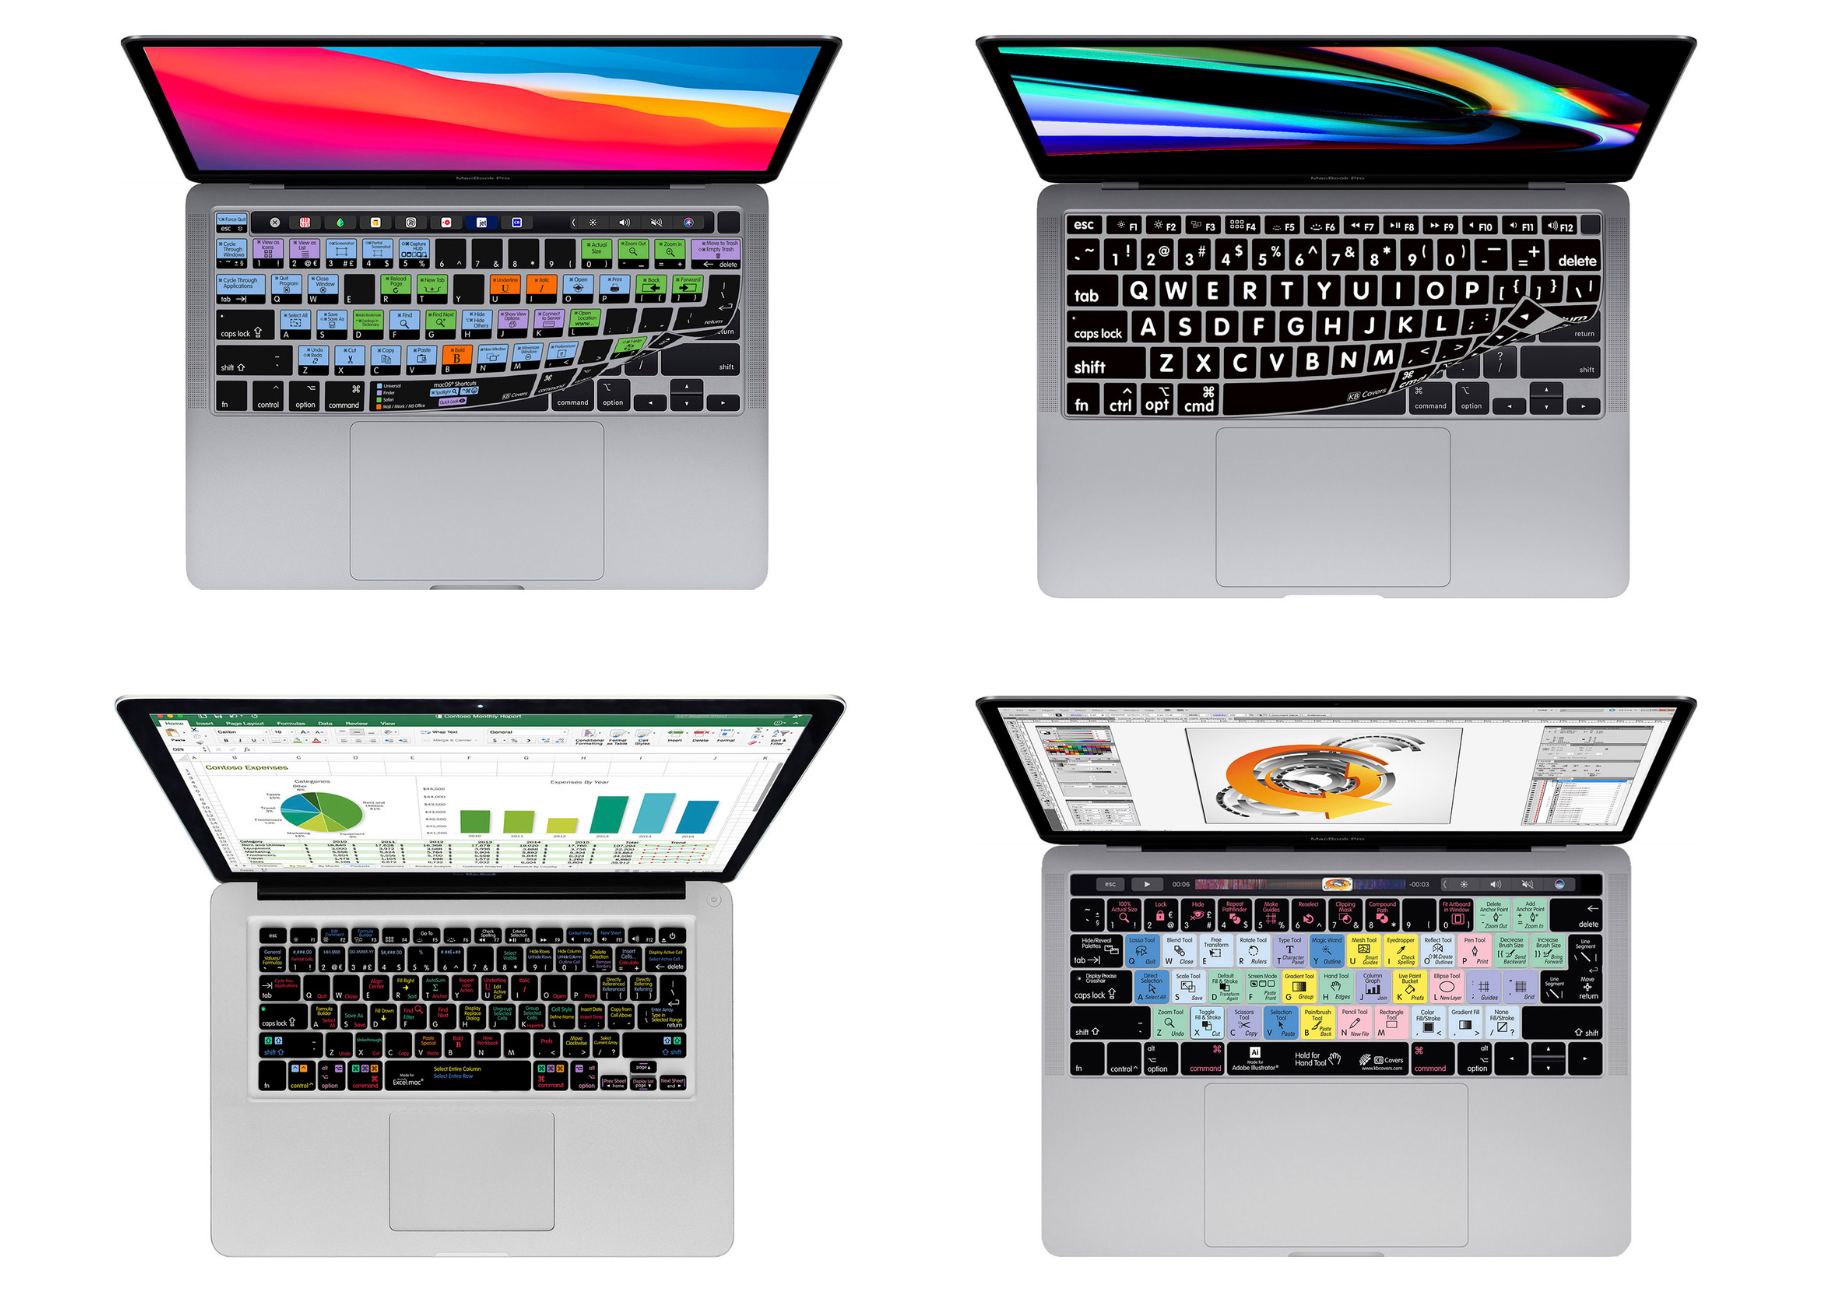 Four custom keyboard covers